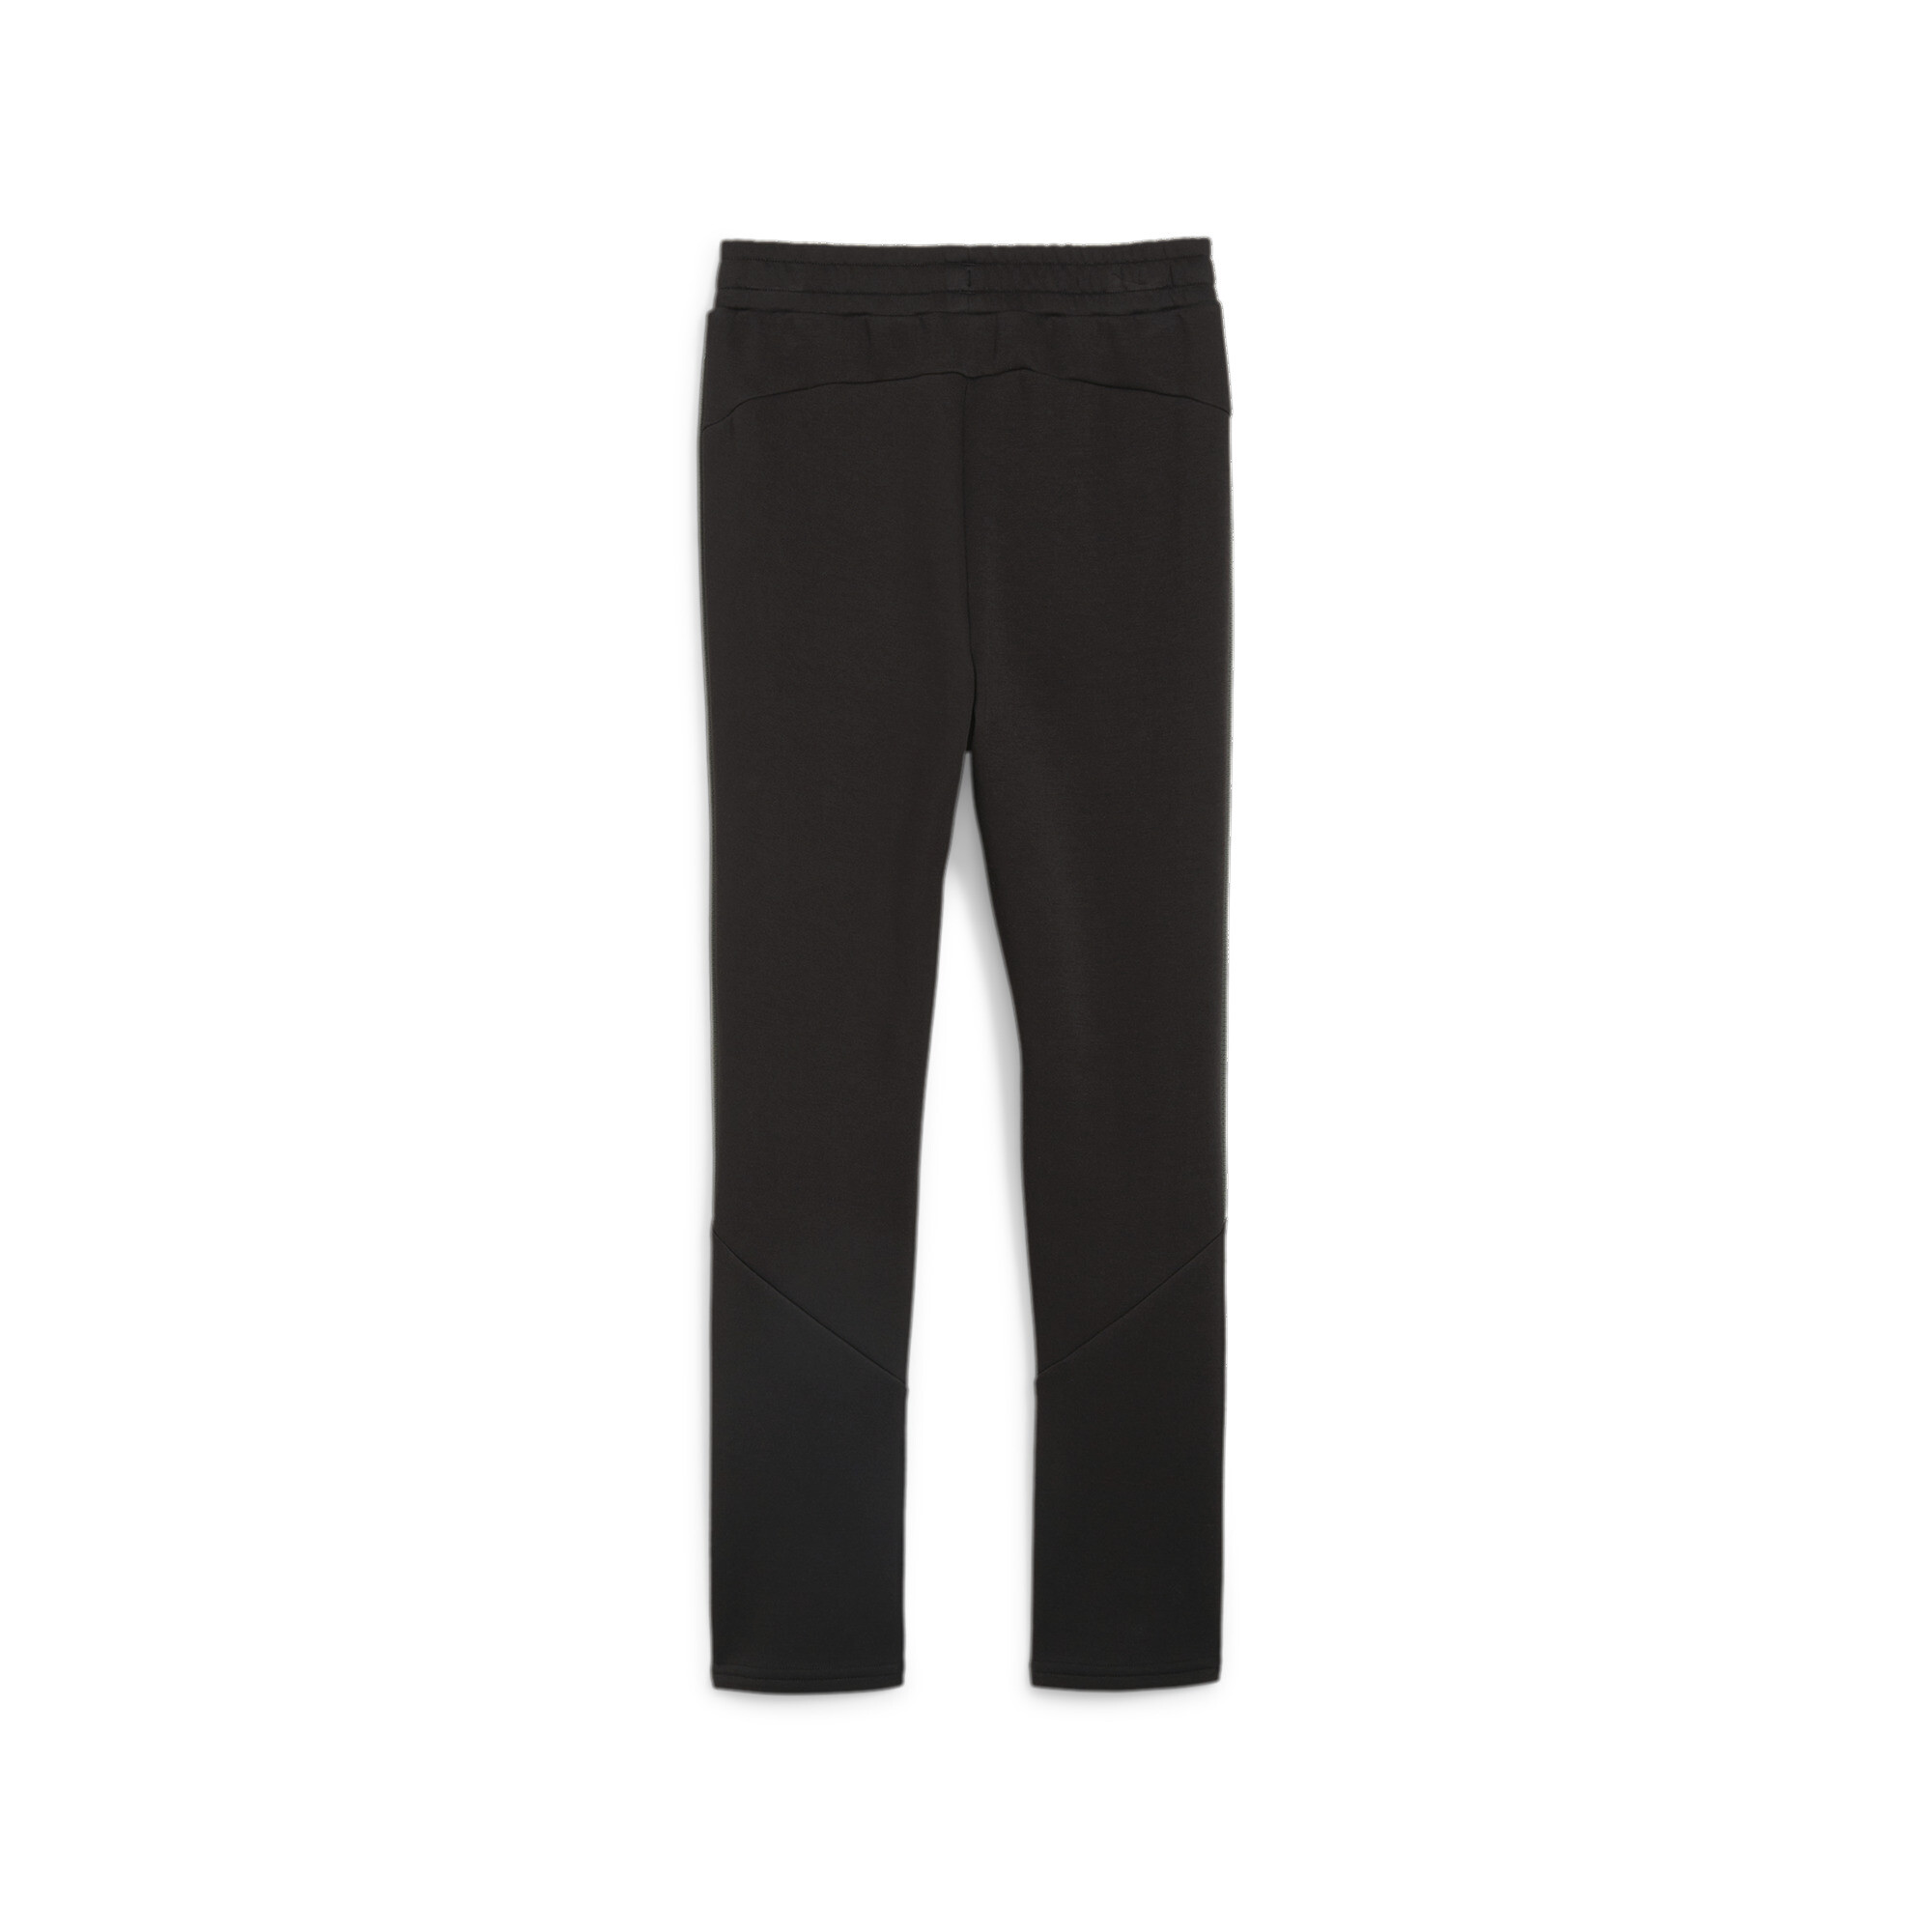 PUMA EVOSTRIPE Sweatpants In Black, Size 13-14 Youth